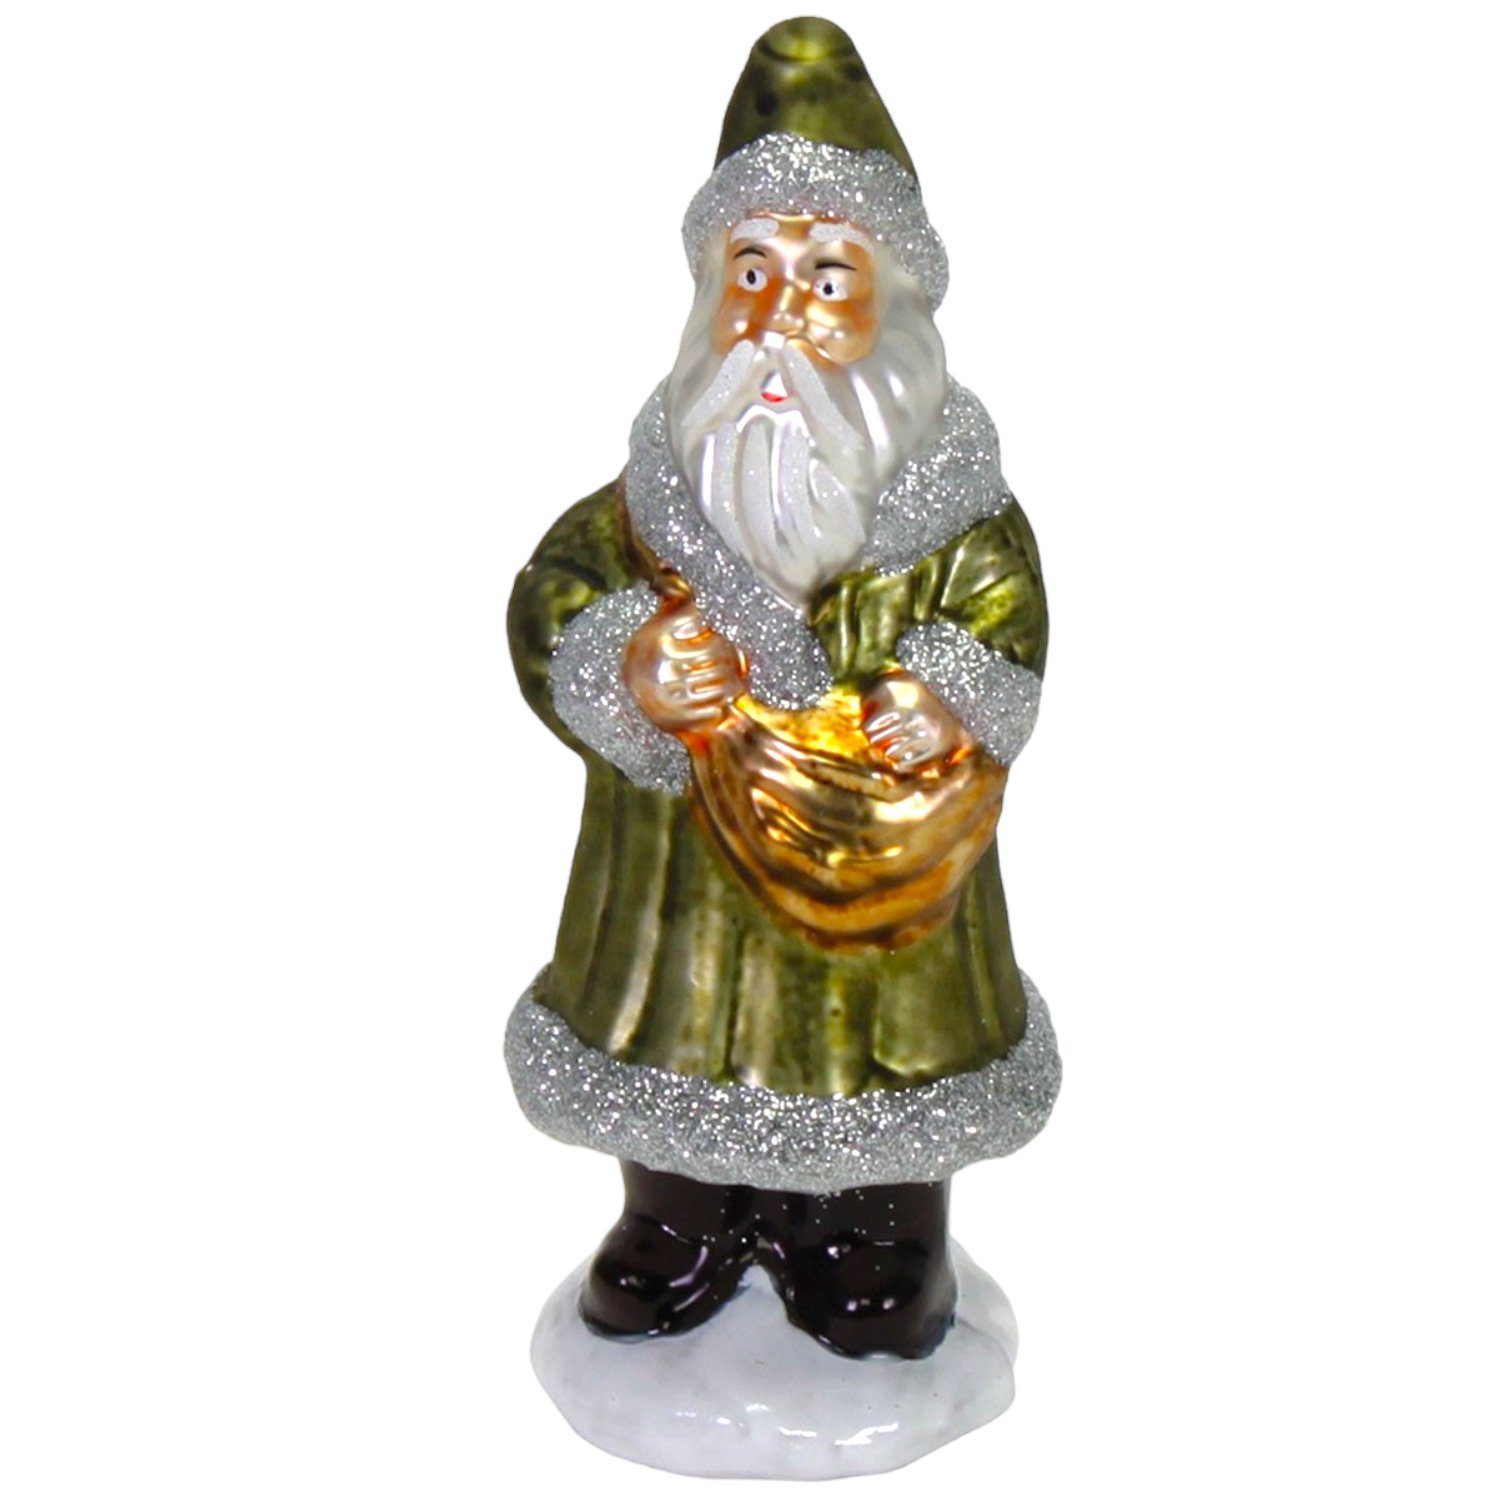 Werner Voß Glas Grün 15cm Figur Nikolaus Weihnachtsmann Santa